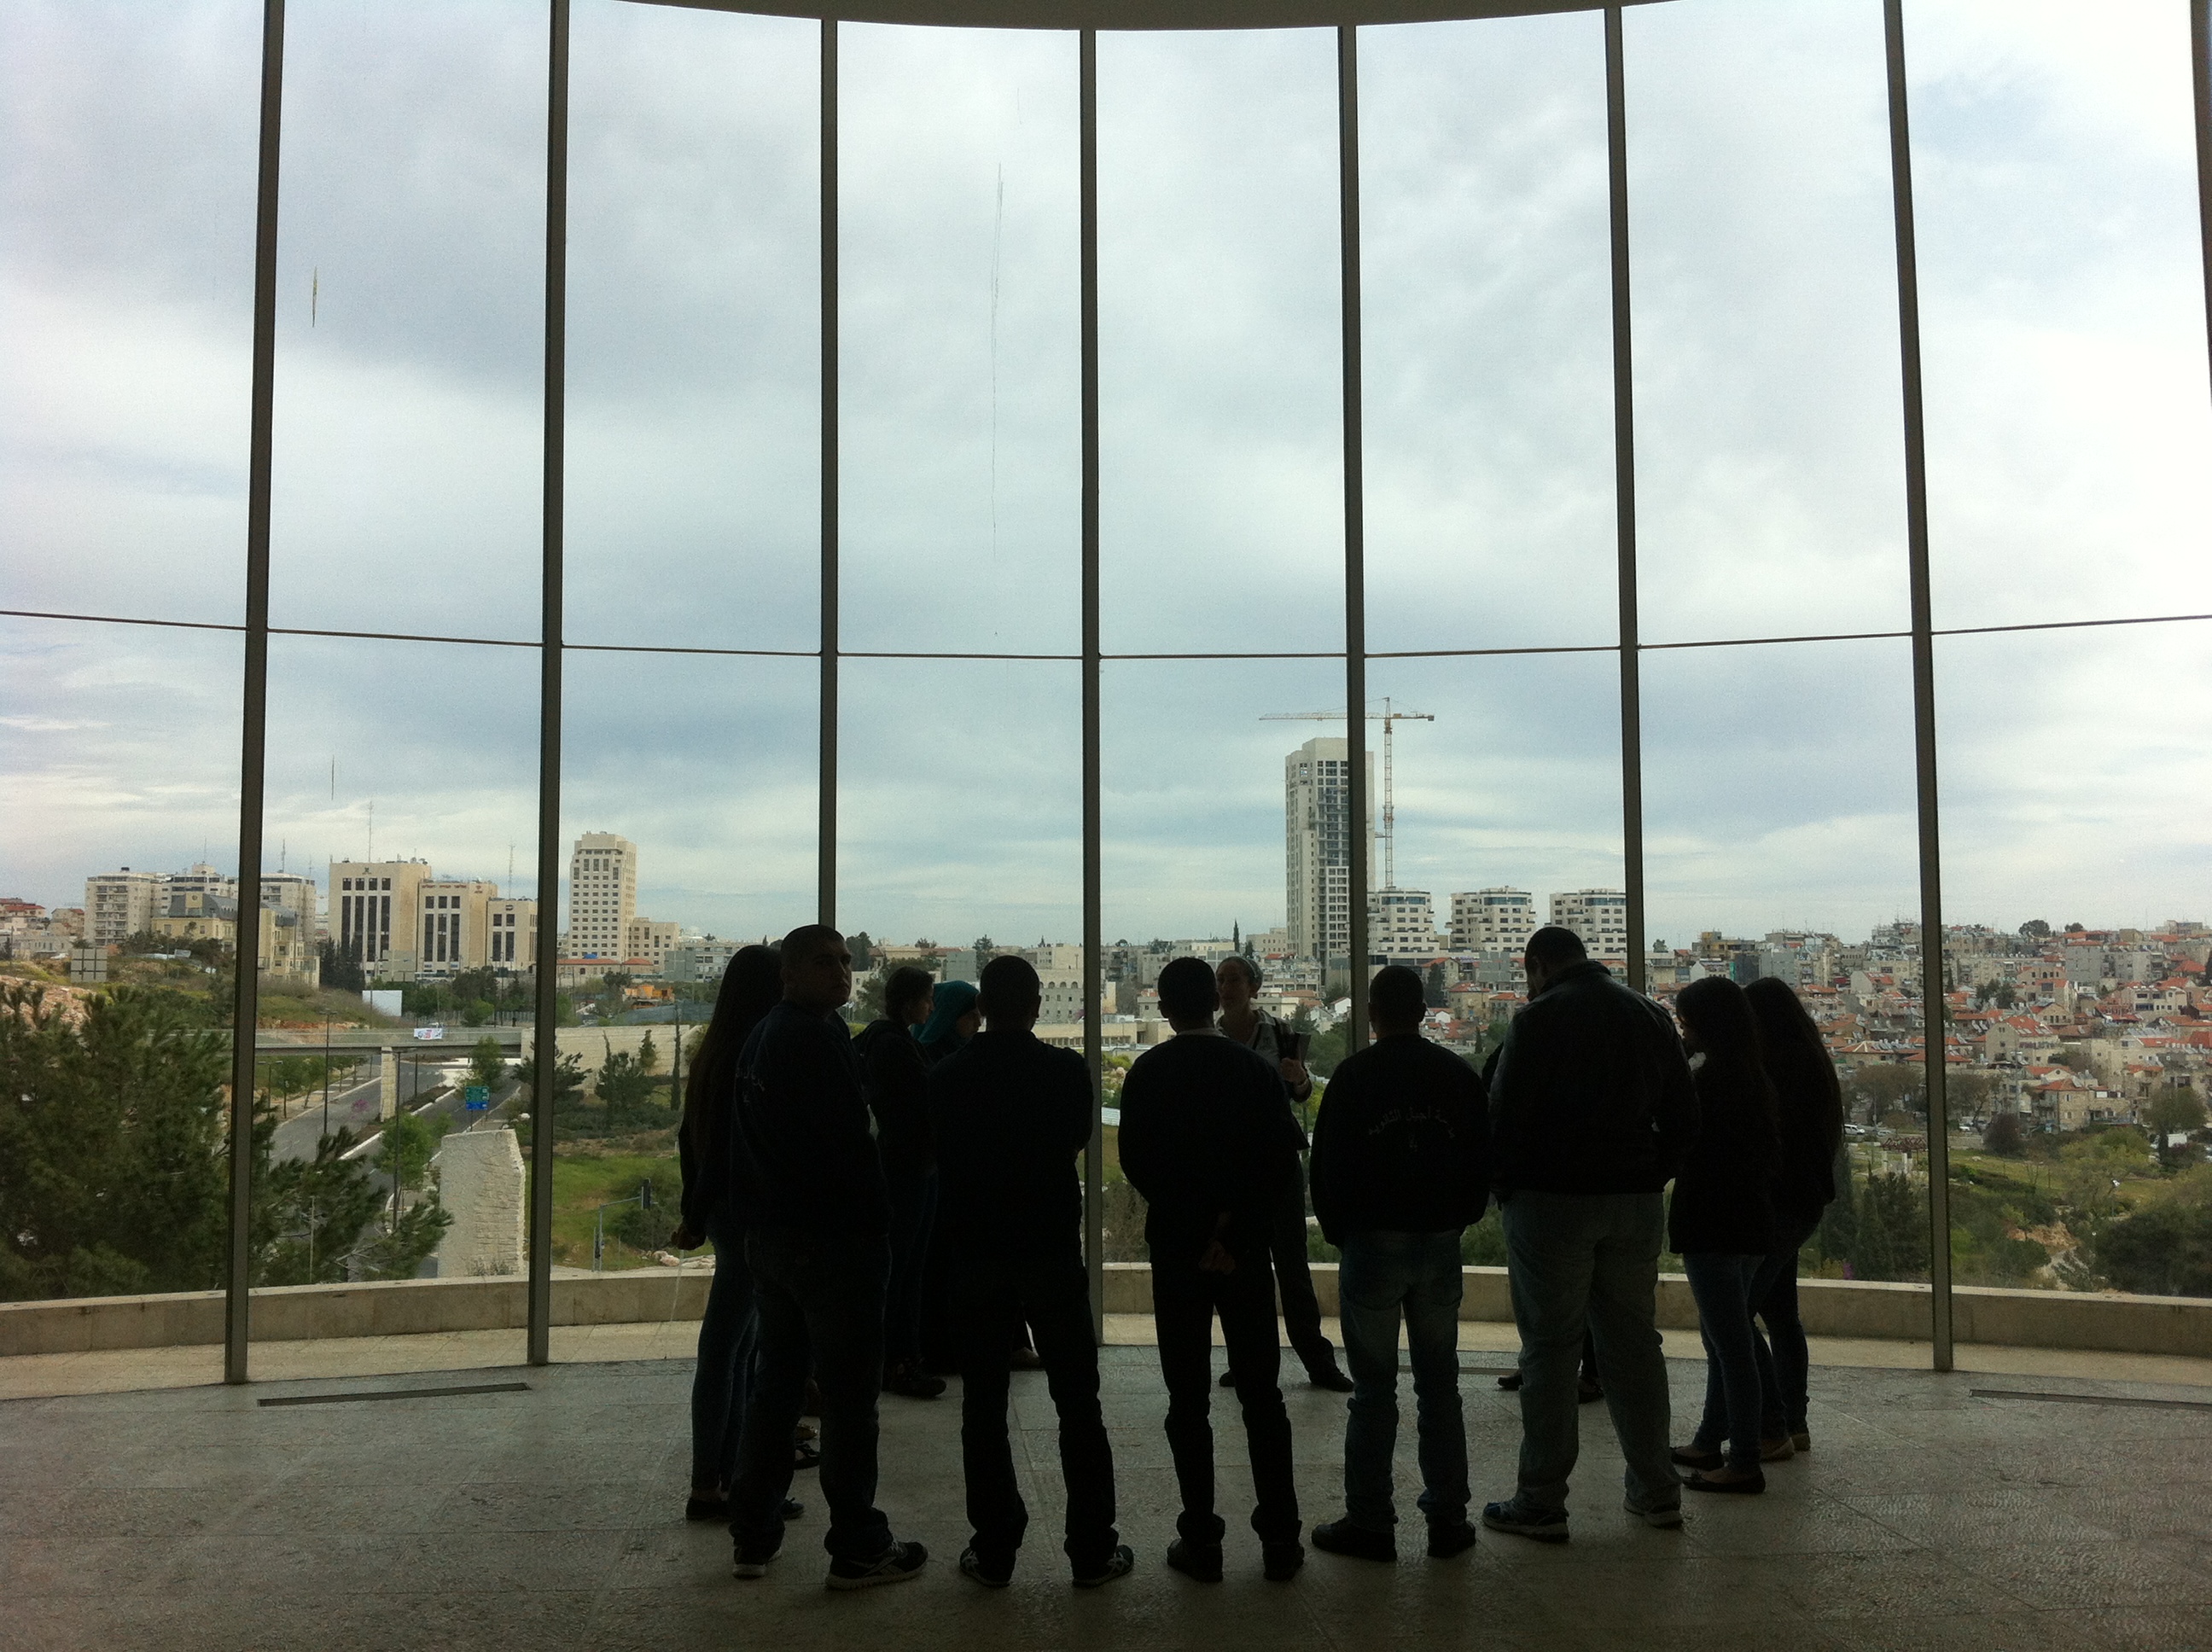 קבוצה בסיור רשמי ליד החלון המזרחי, ביהמ"ש העליון בירושלים. צילום: כרמל חנני